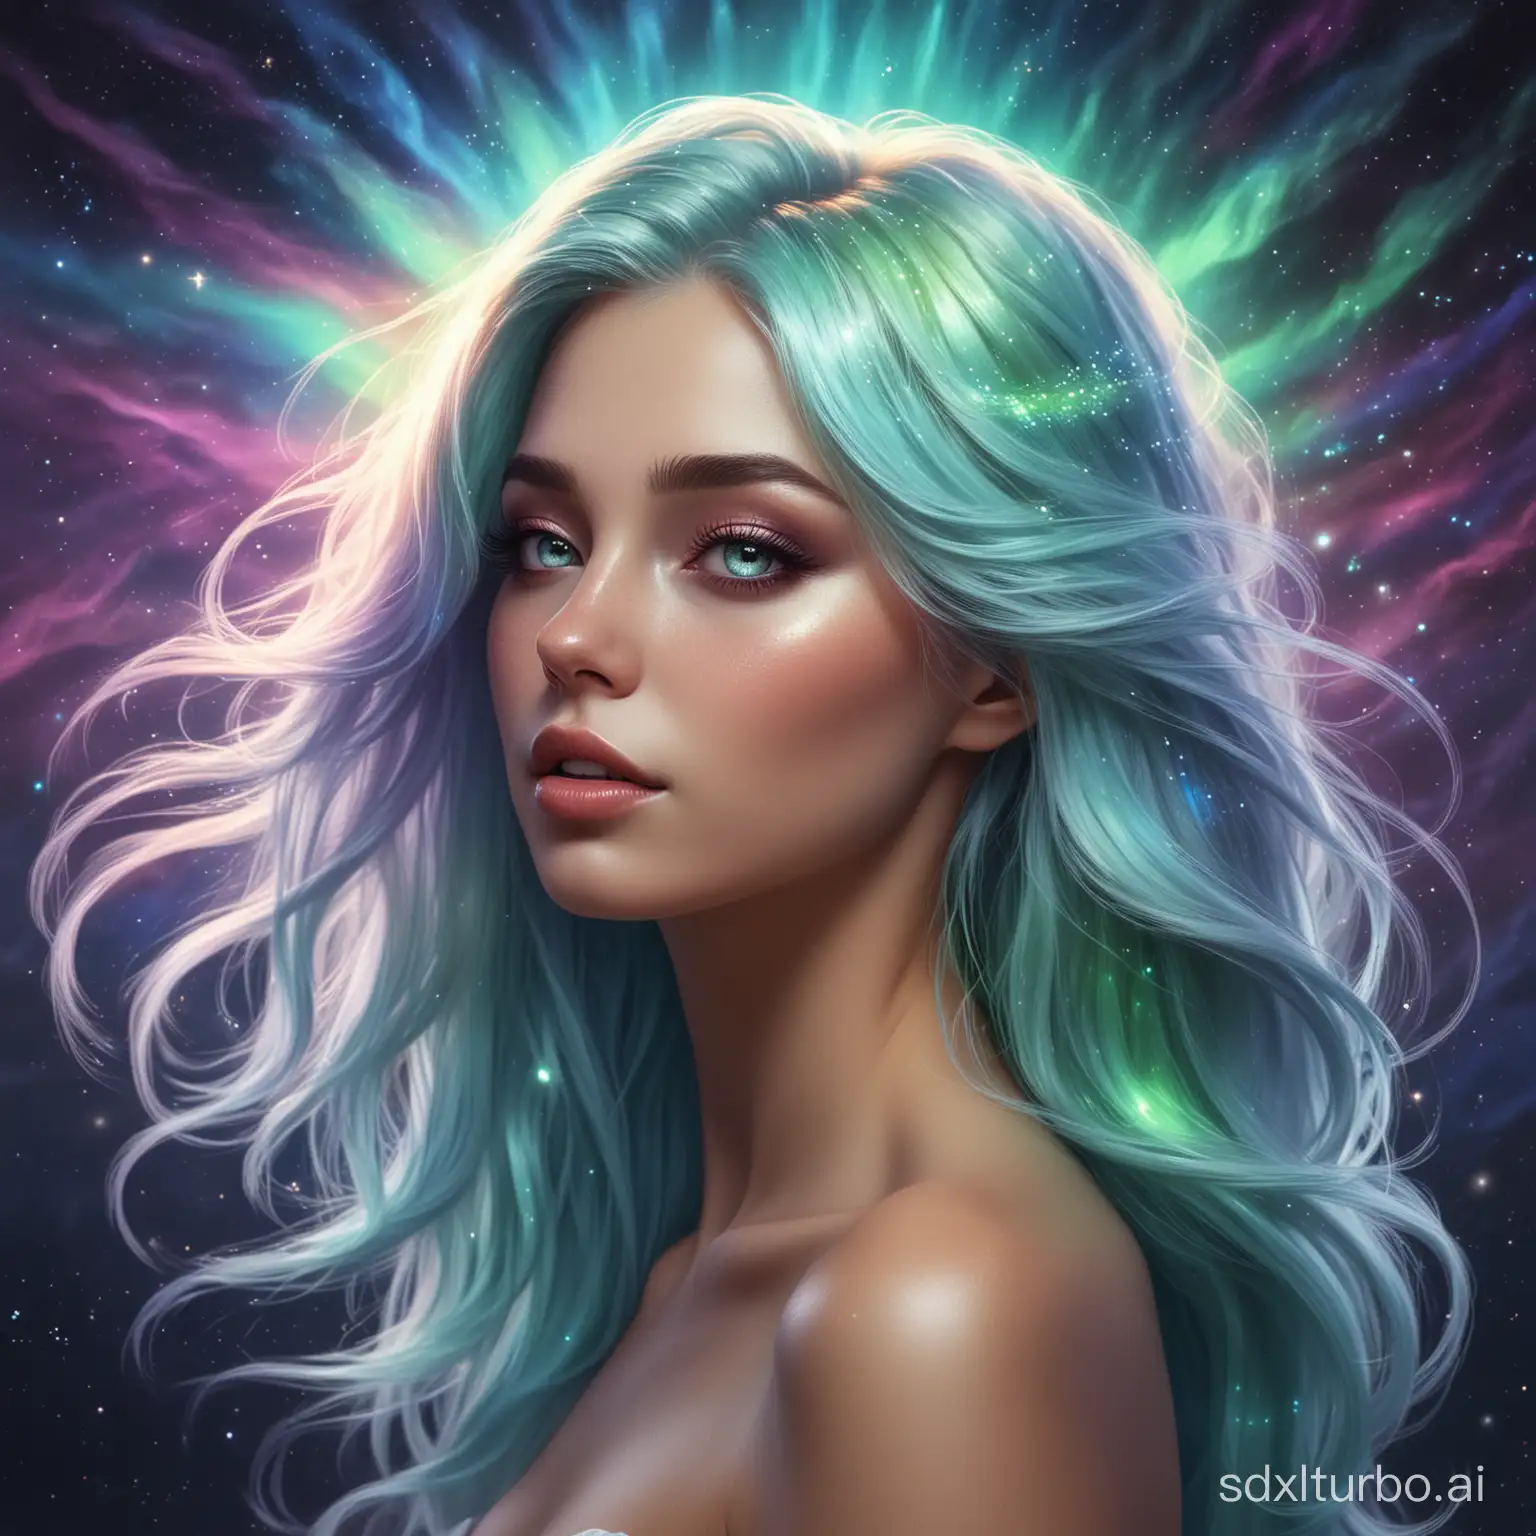 realistic, fantasy, dream, woman with magic aurora borealis hair